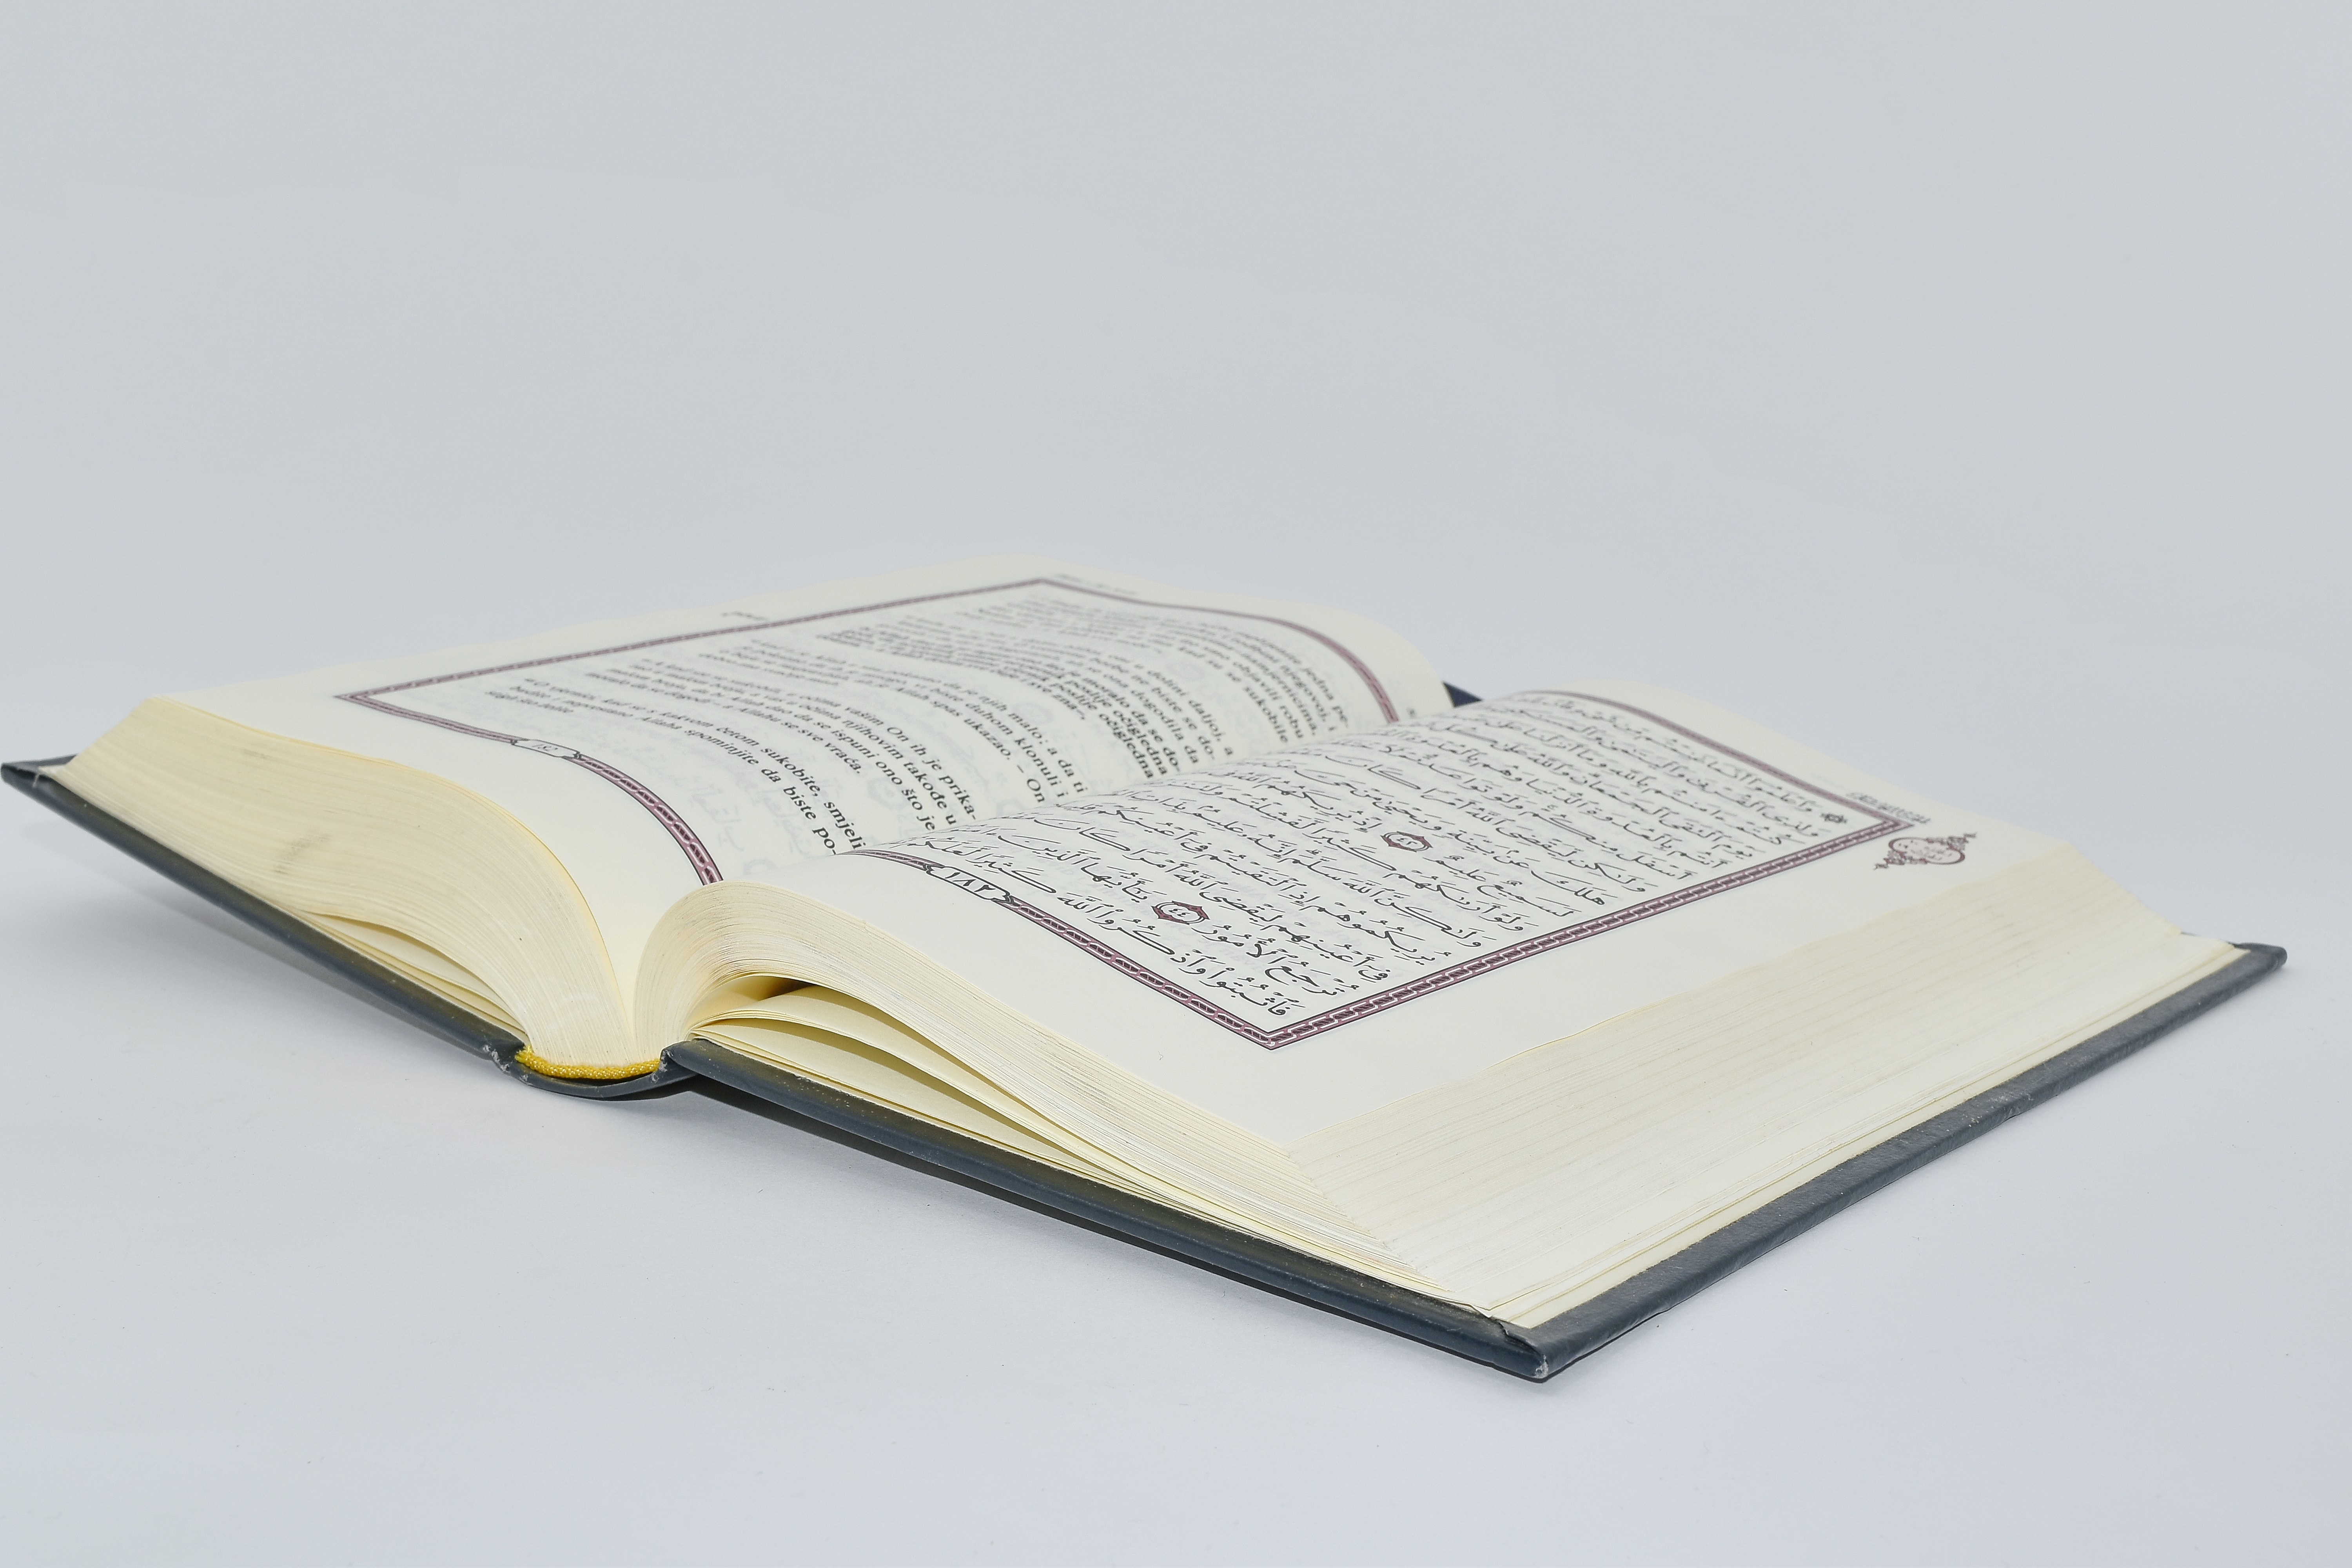 Учебник page. Арабские книги в открытом виде в. Рисунок книги в араб. Арабские книги на белом фоне. Обычная арабская книга.